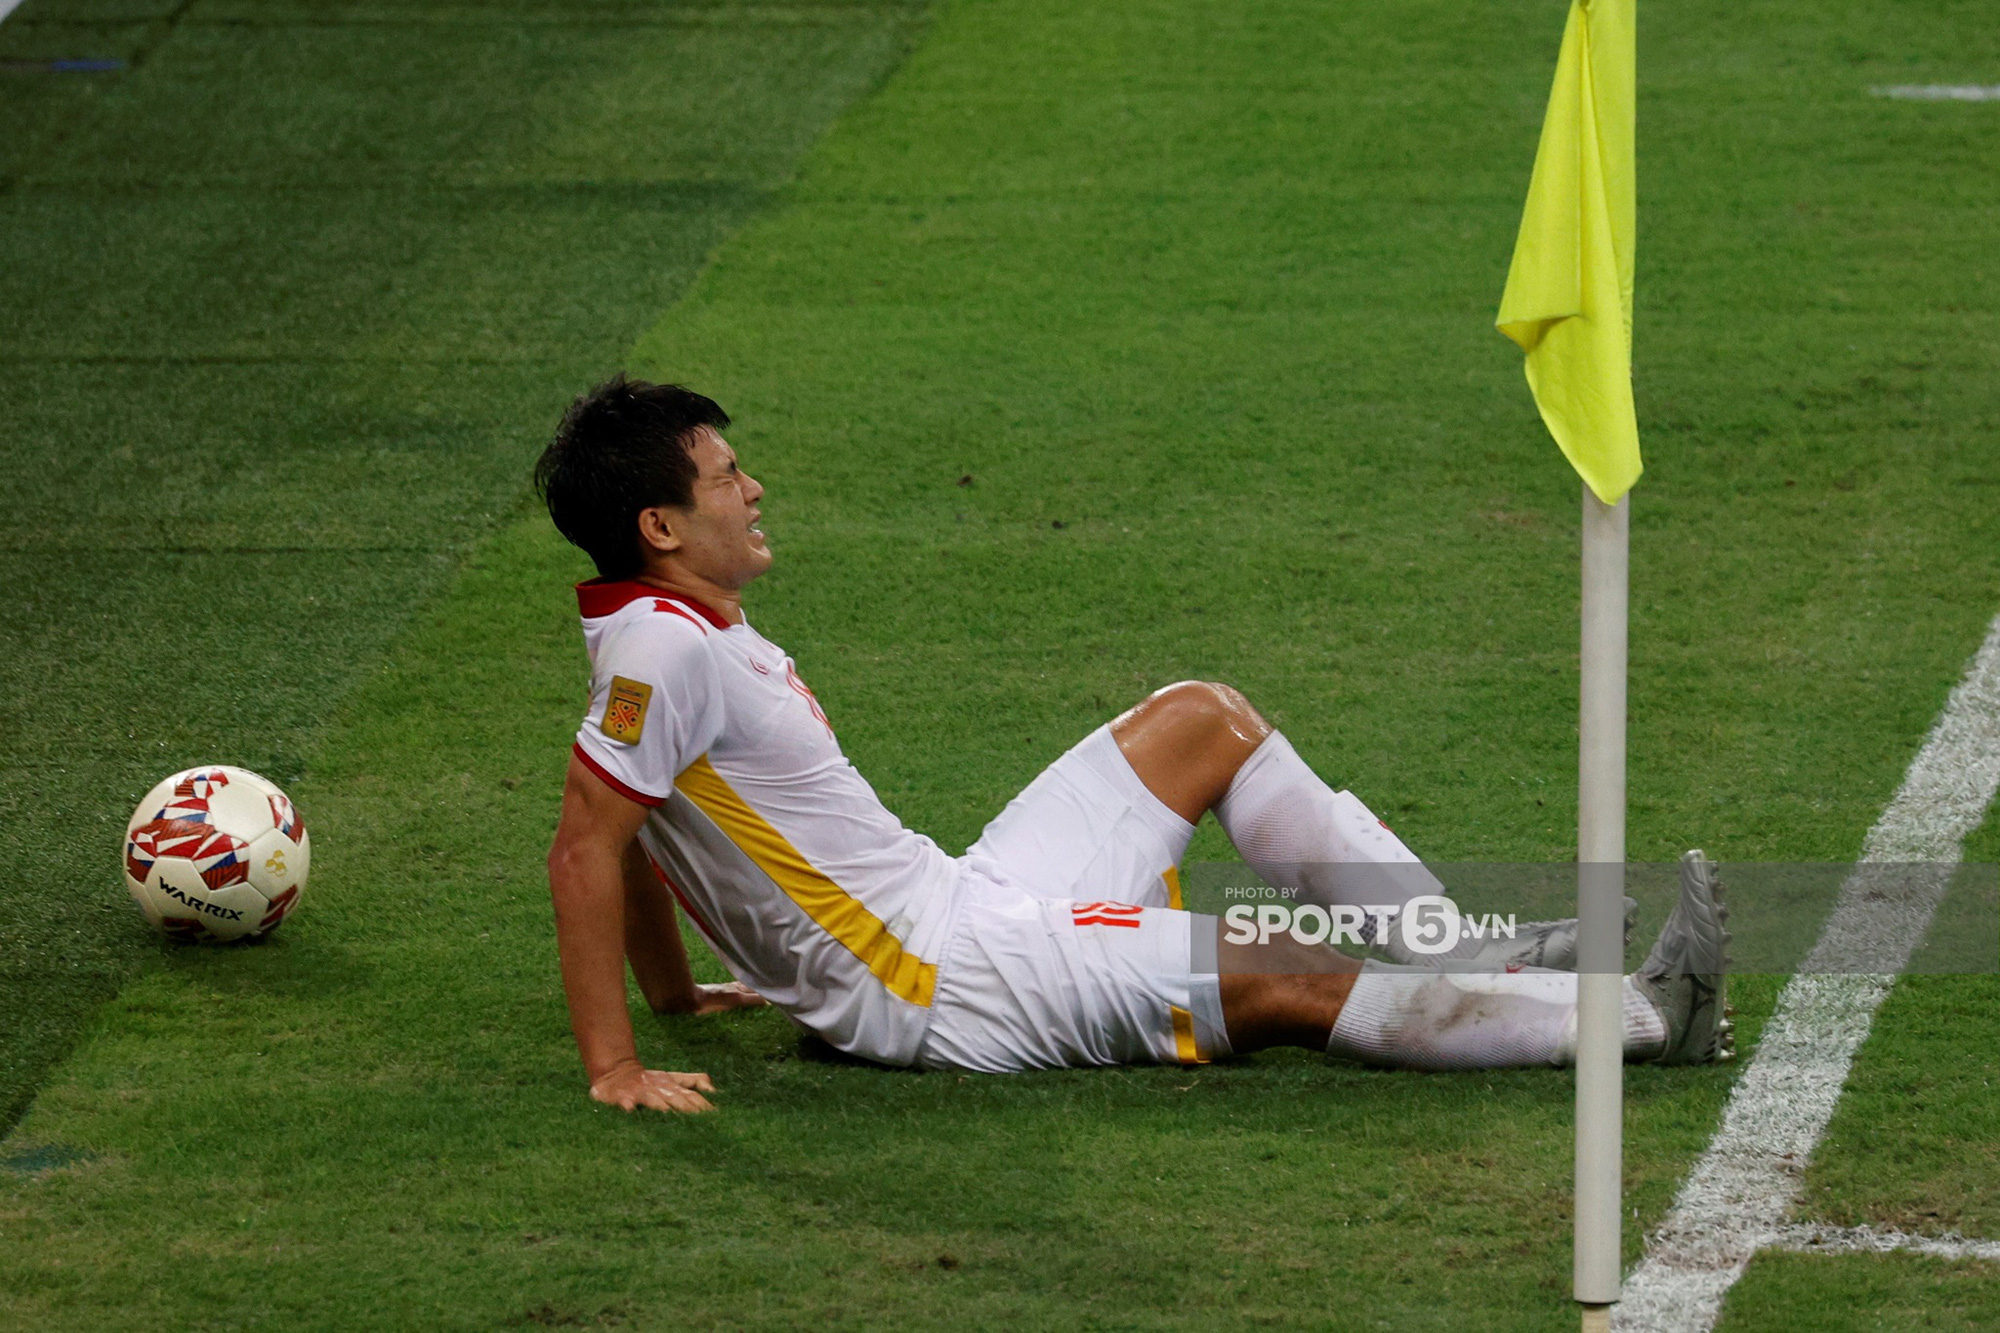 Đang cân team, Đức Chinh đau đớn rời sân giữa trận quyết đấu với Thái Lan - Ảnh 1.